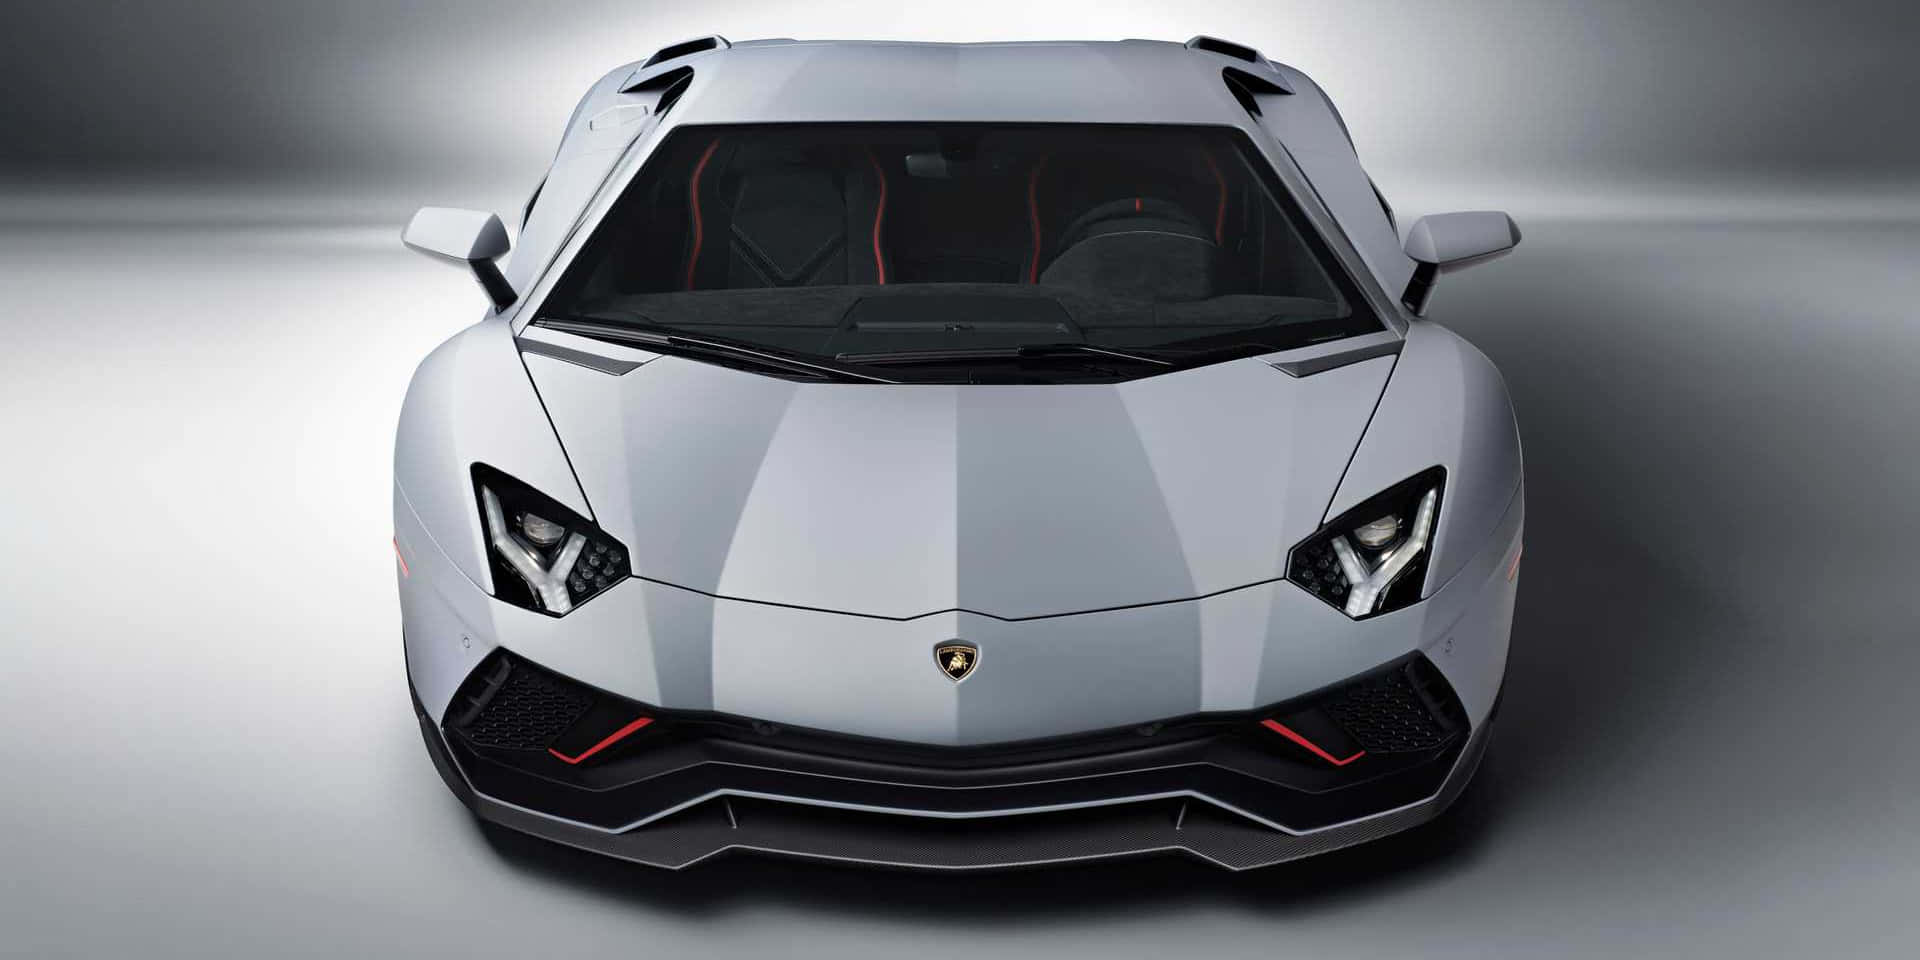 Diefrontansicht Eines Weißen Lamborghini-sportwagens